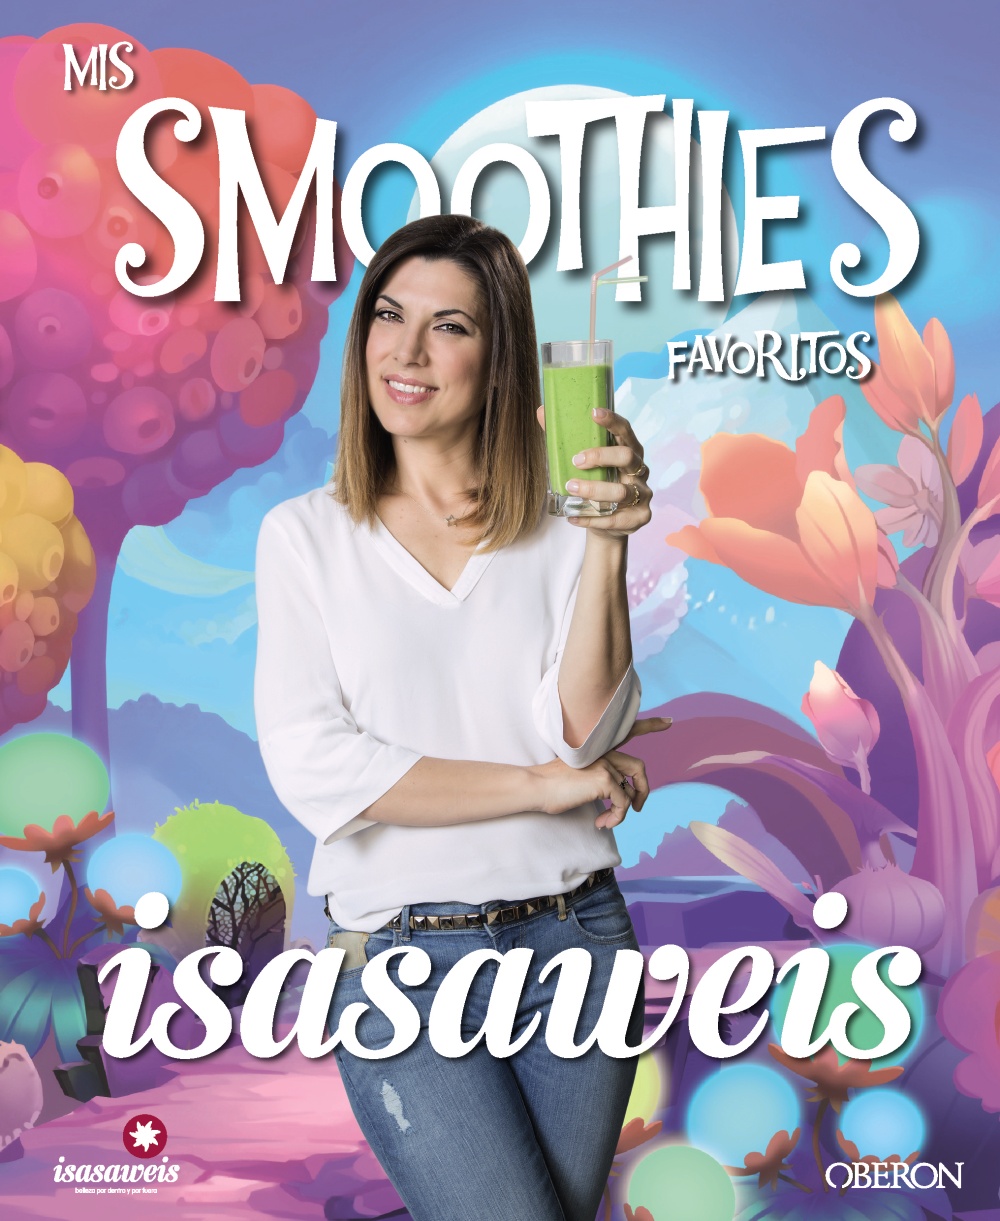 Mis smoothies favoritos - Isasaweis  Isasaweis 